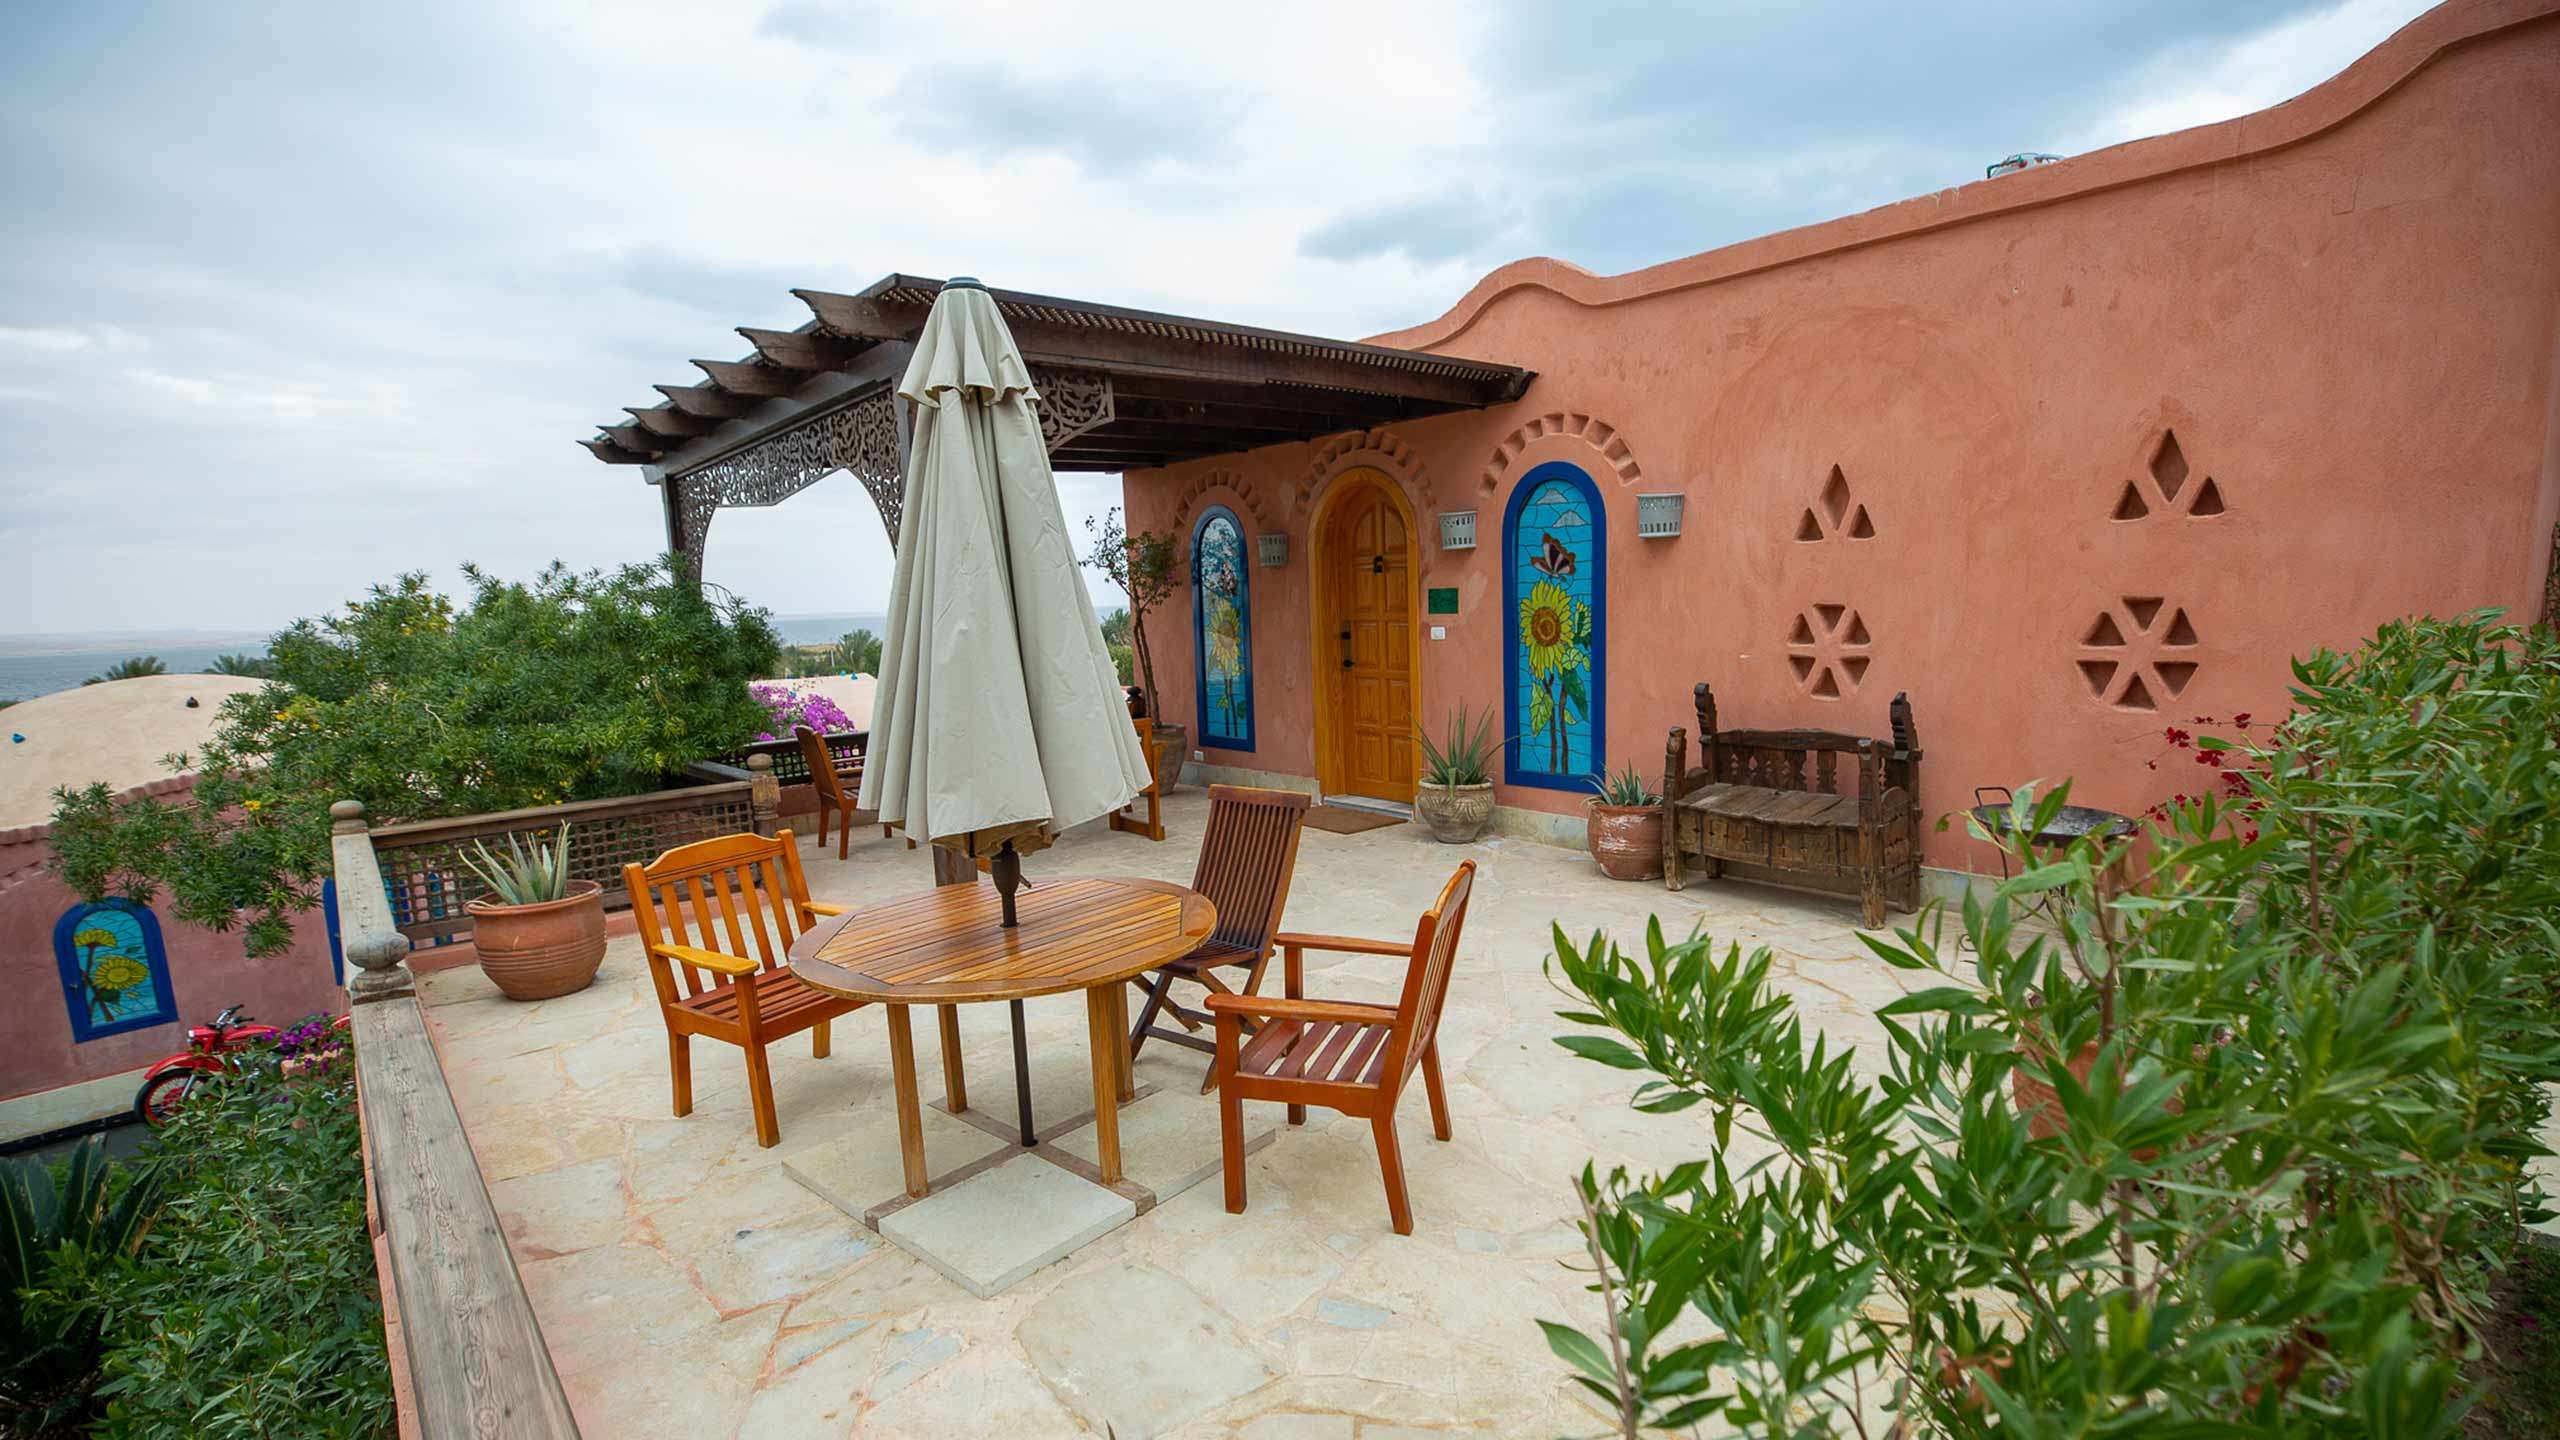 Lazib Inn Resort & Spa